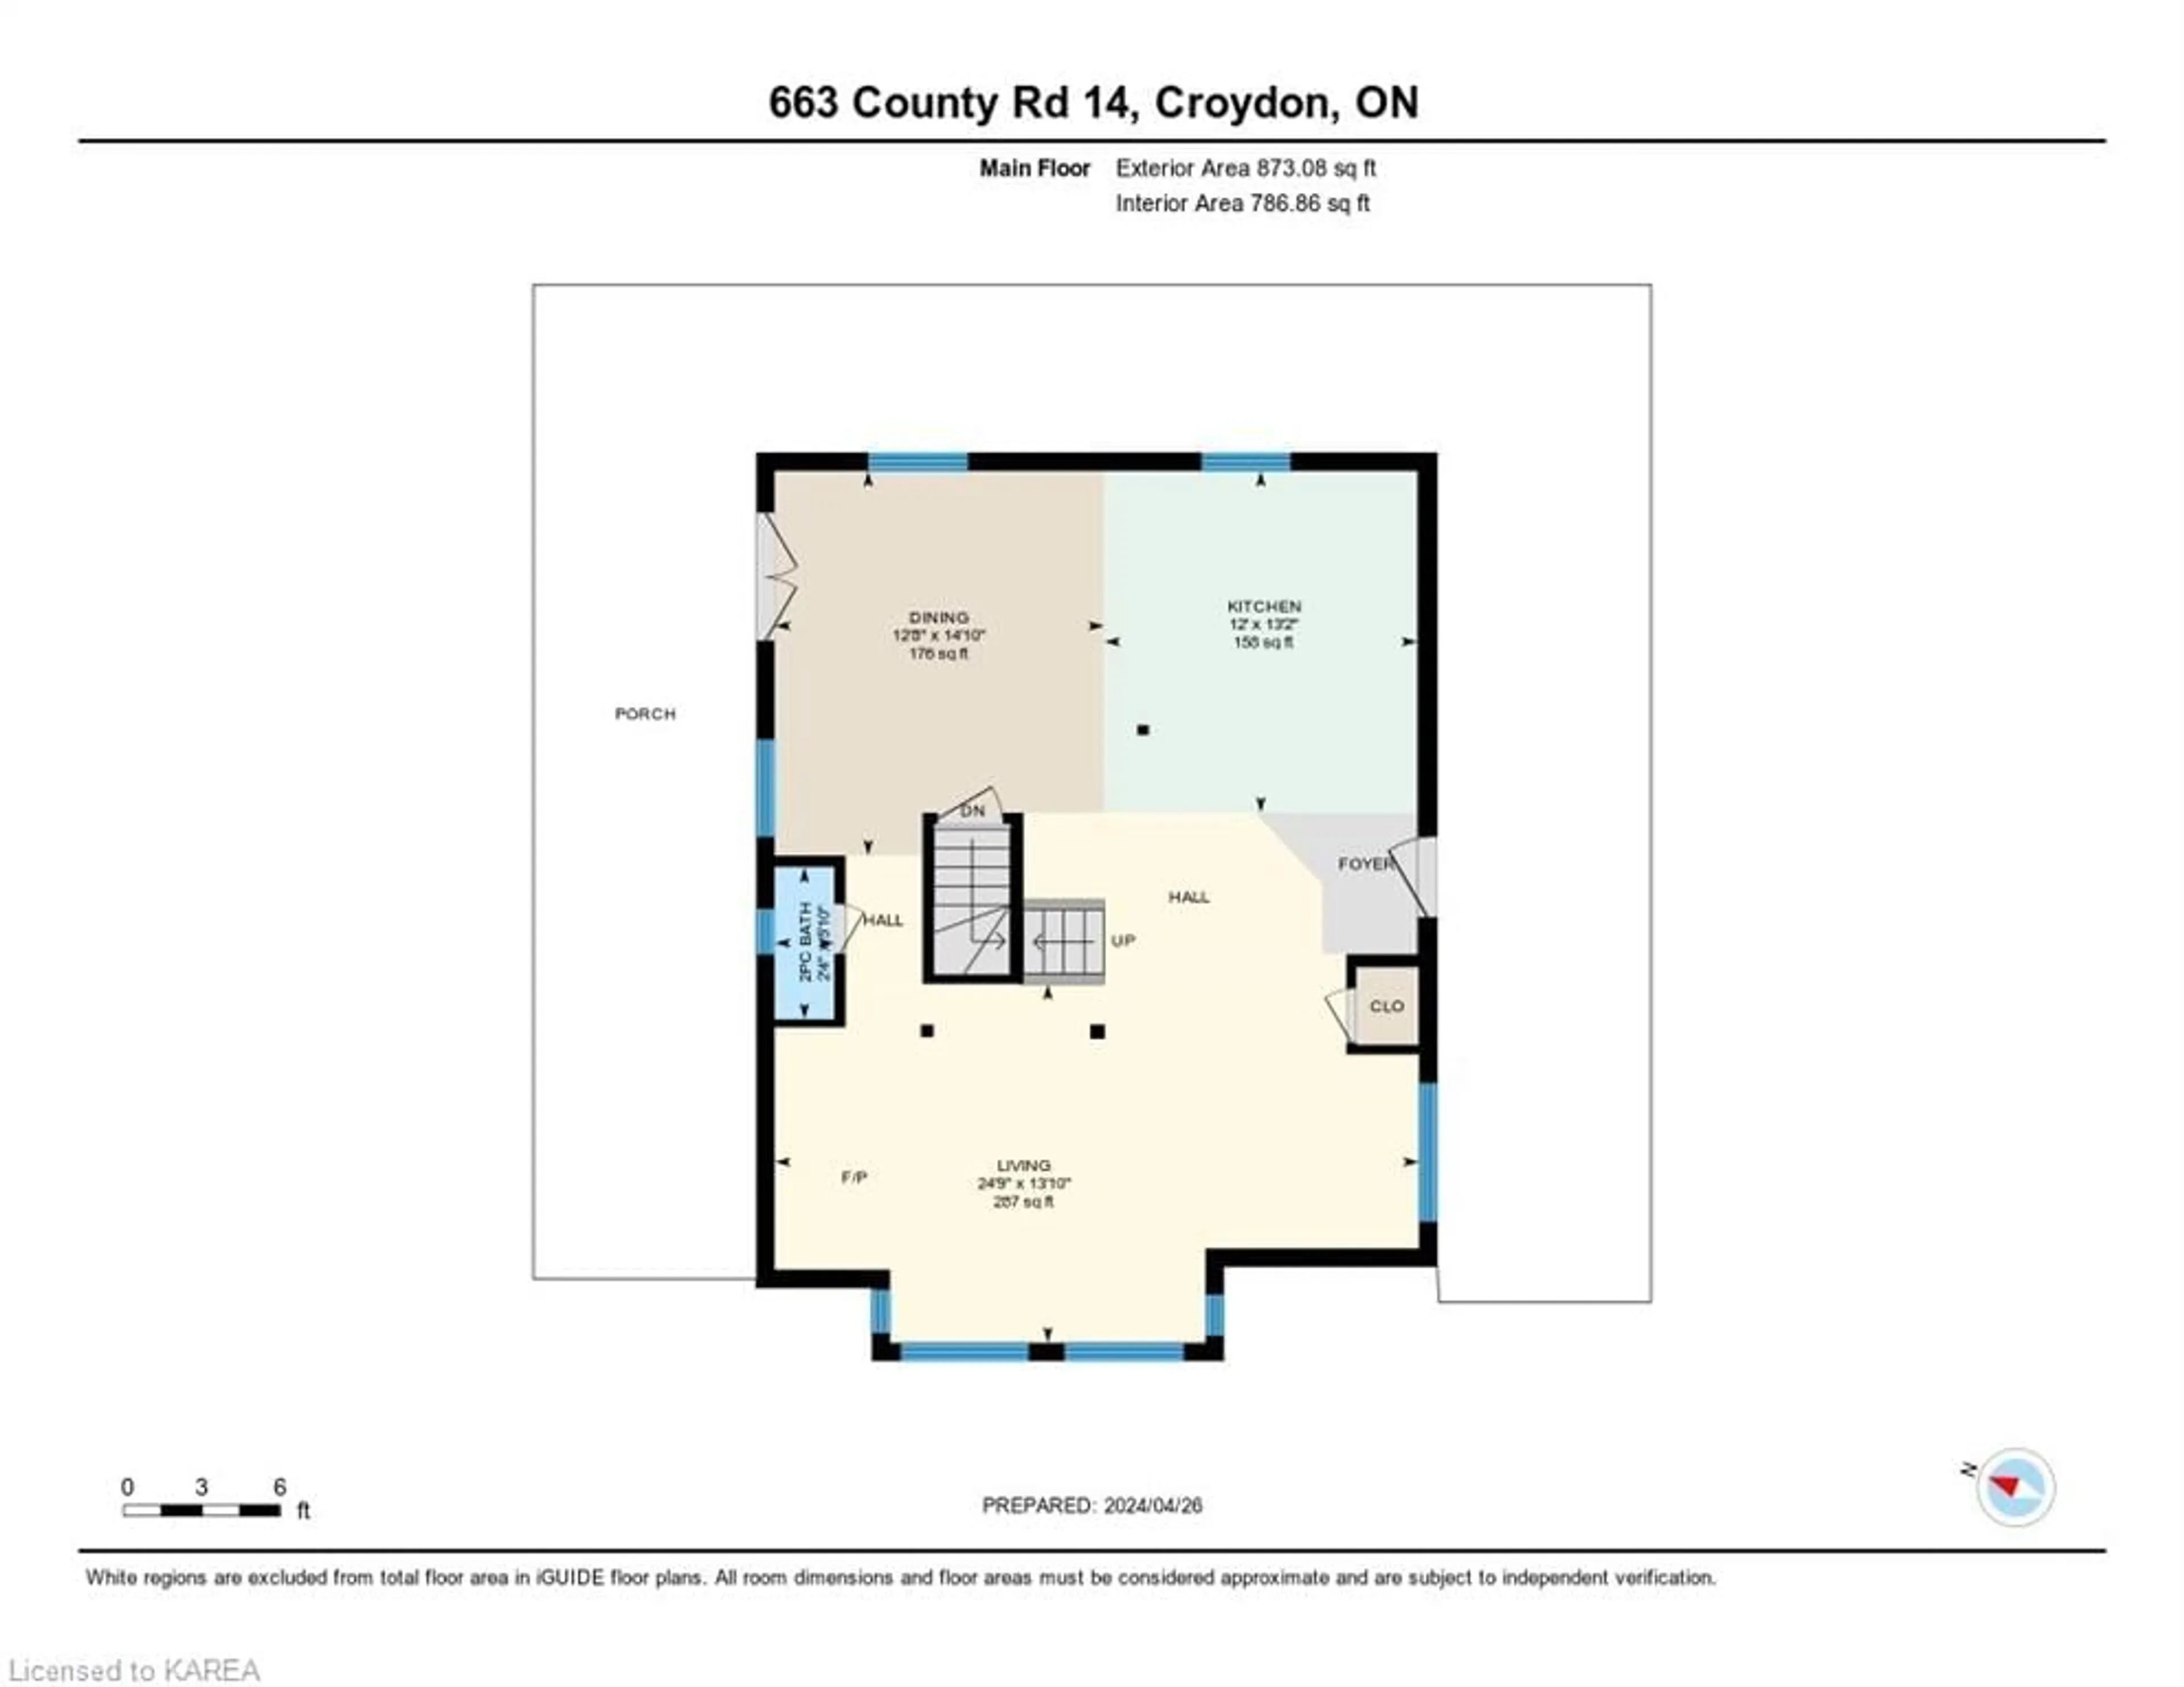 Floor plan for 663 County Rd 14, Enterprise Ontario K0K 1Z0